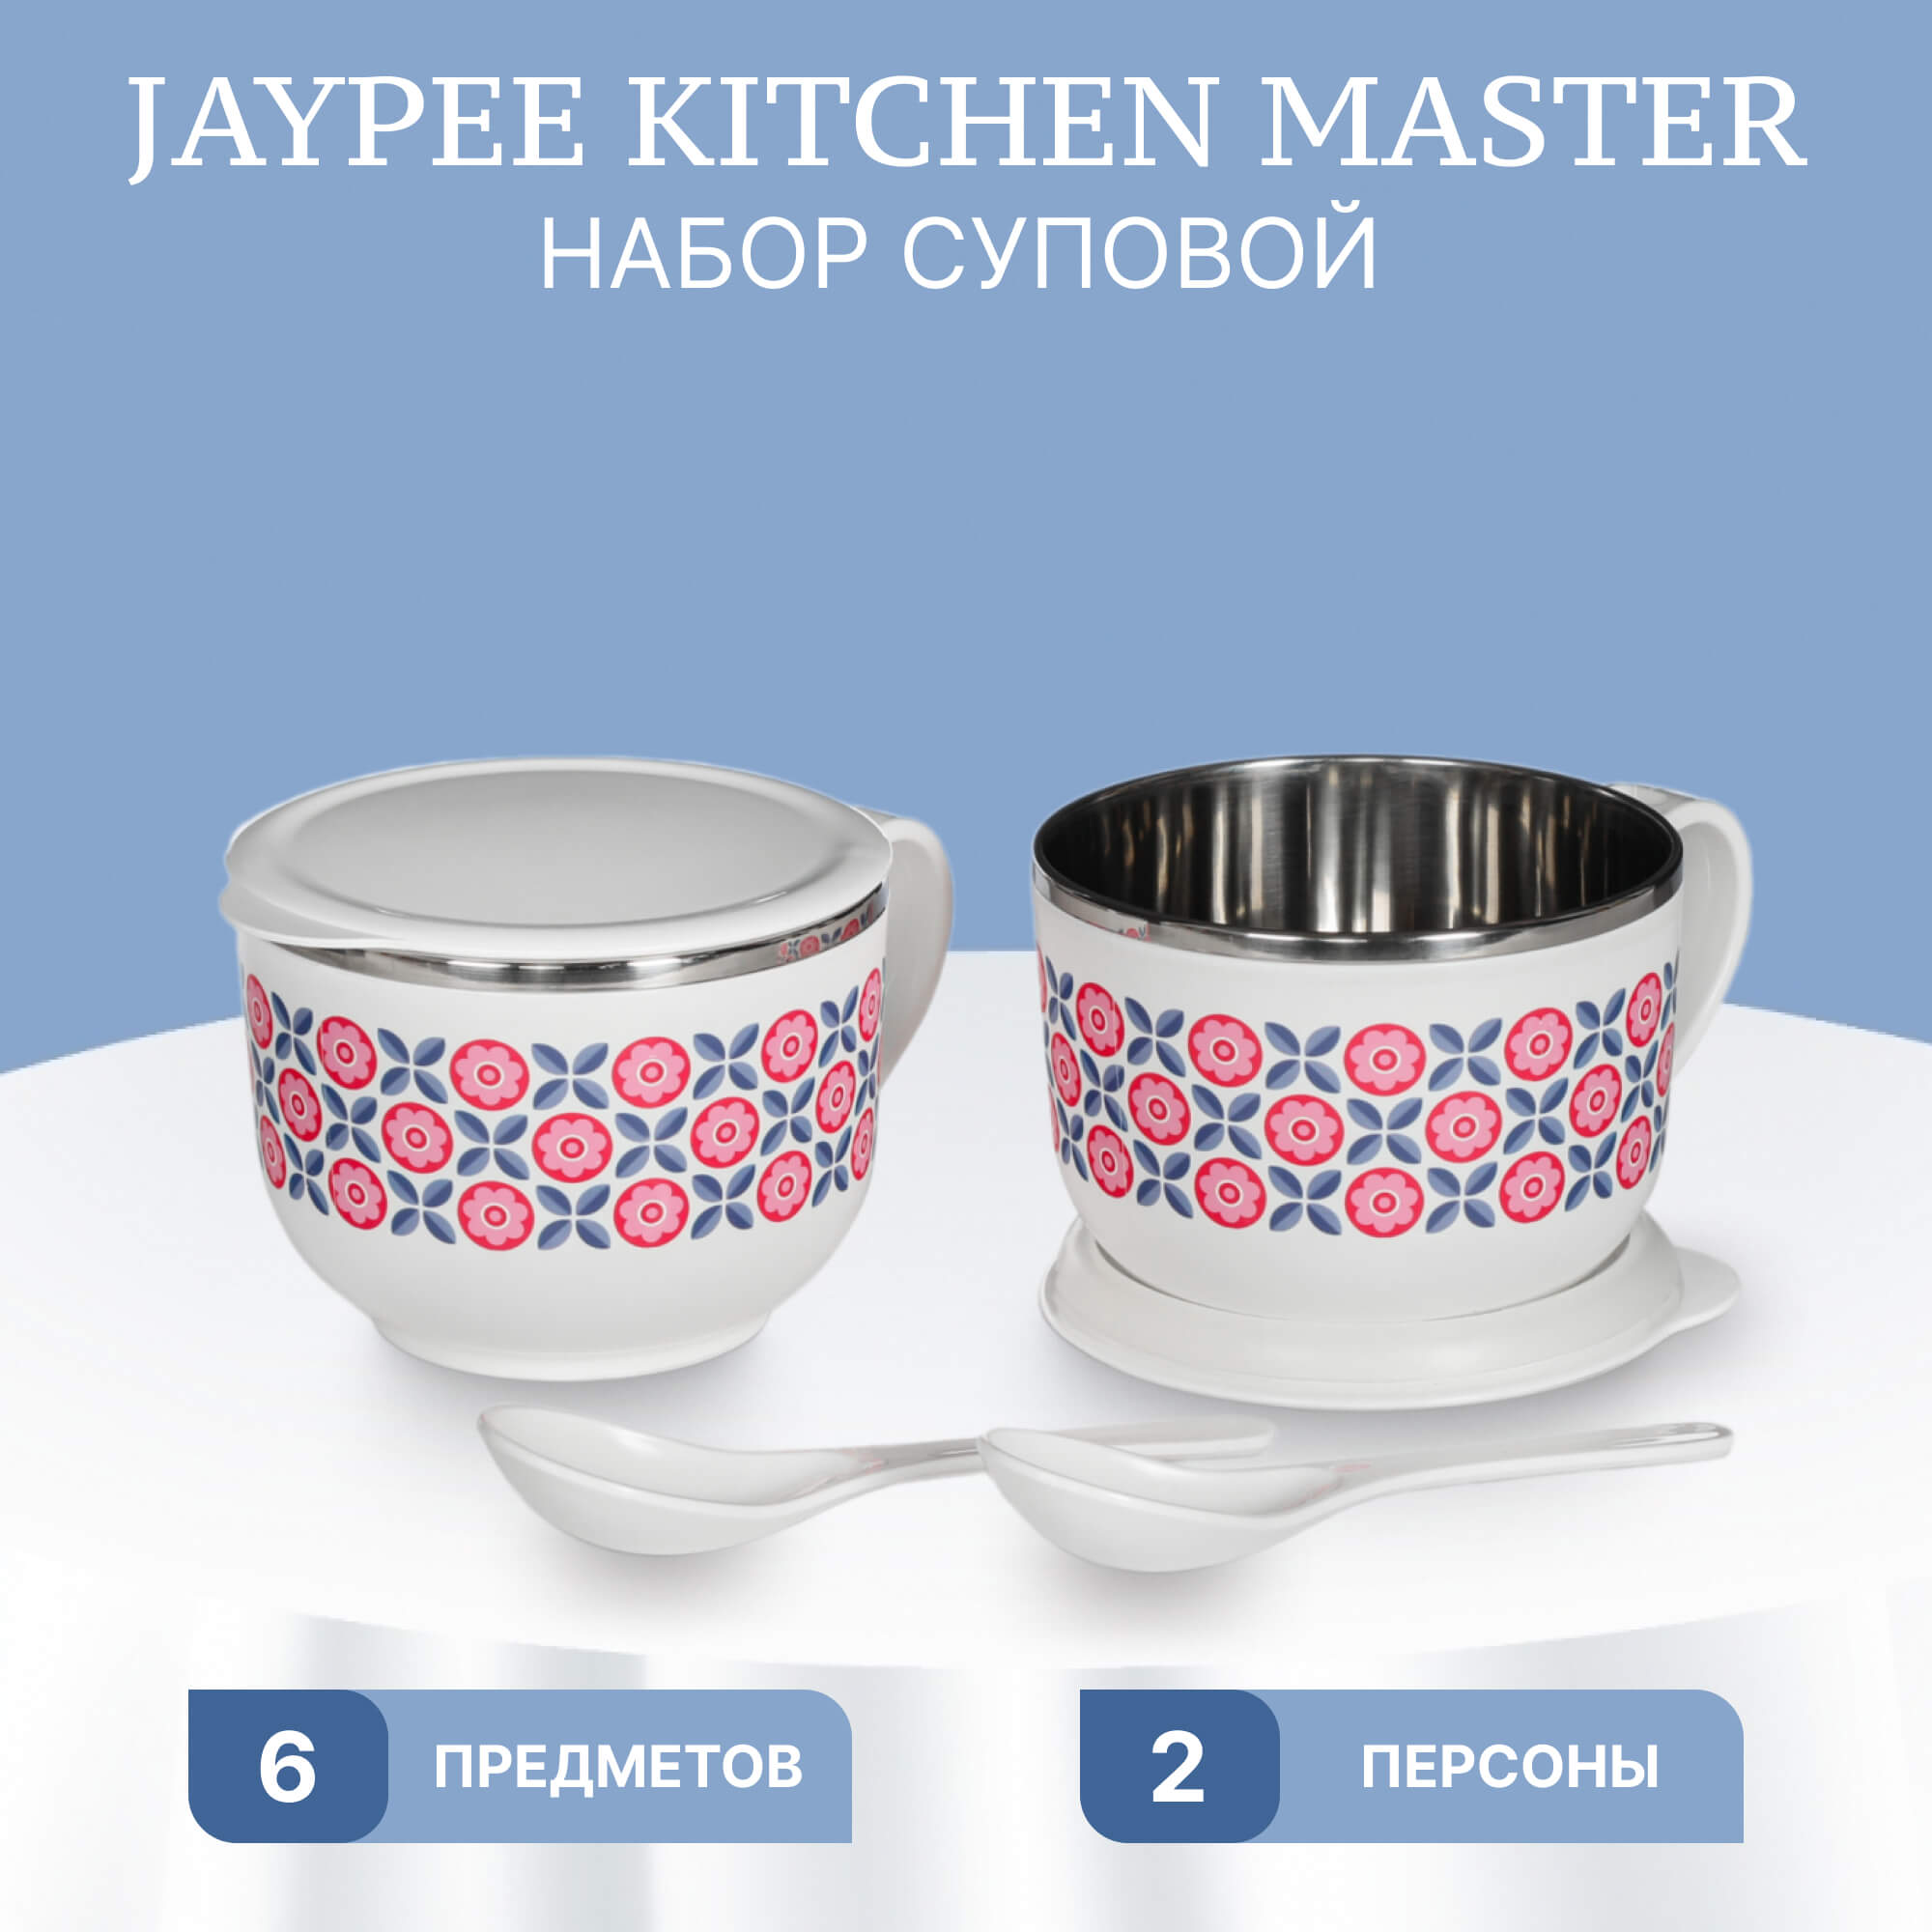 Набор суповой Jaypee Kitchen Master 6 предметов, цвет белый - фото 2